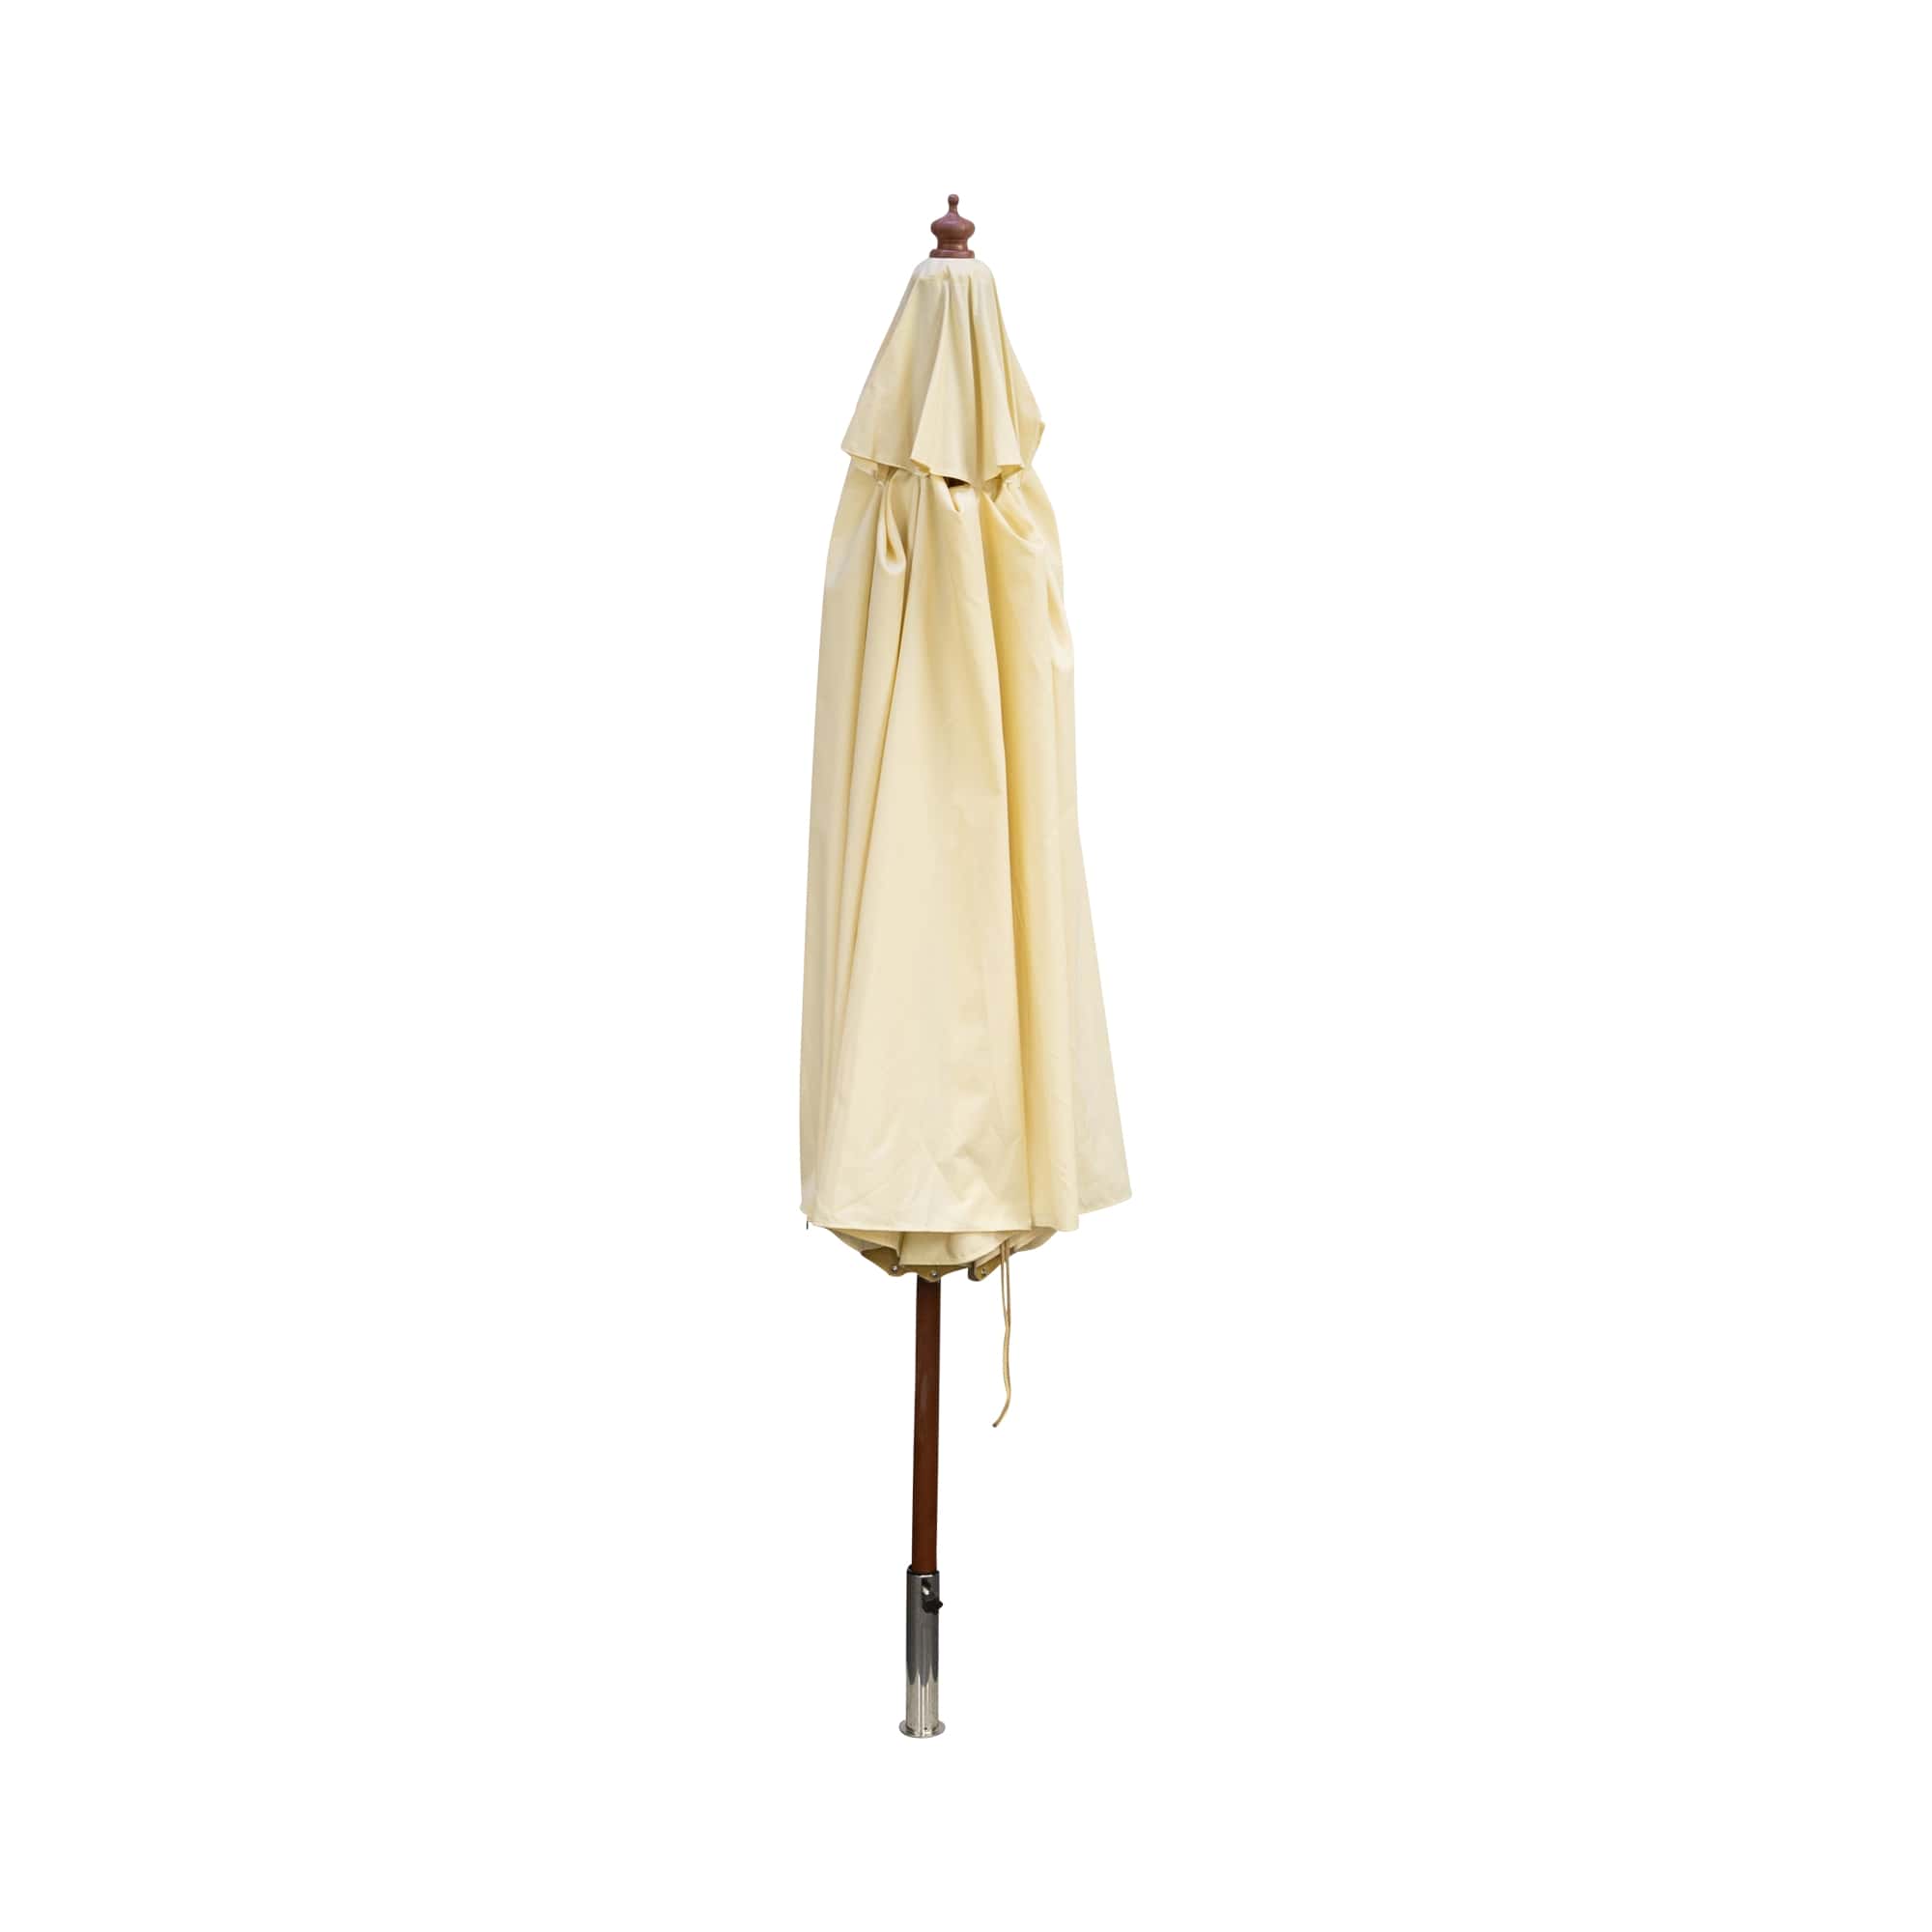 Holzstockschirm / Sonnenschirm rund, 300 cm, beige